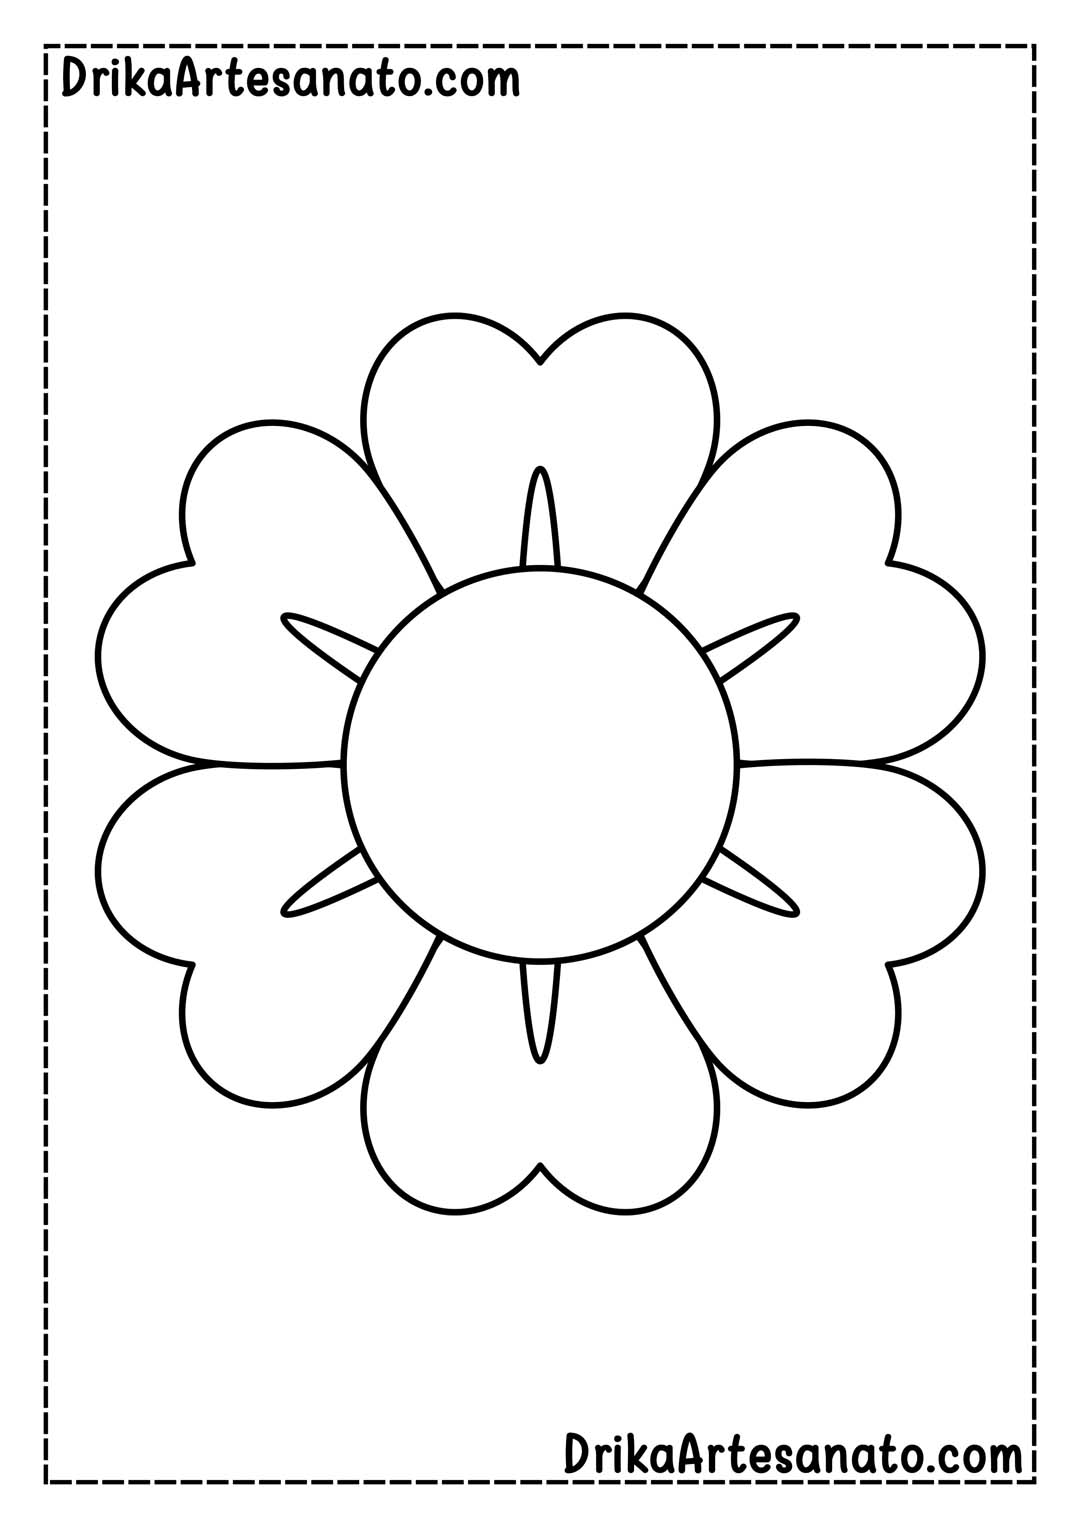 Desenho de Flor Grande com 6 Corações para Imprimir em Tamanho Real